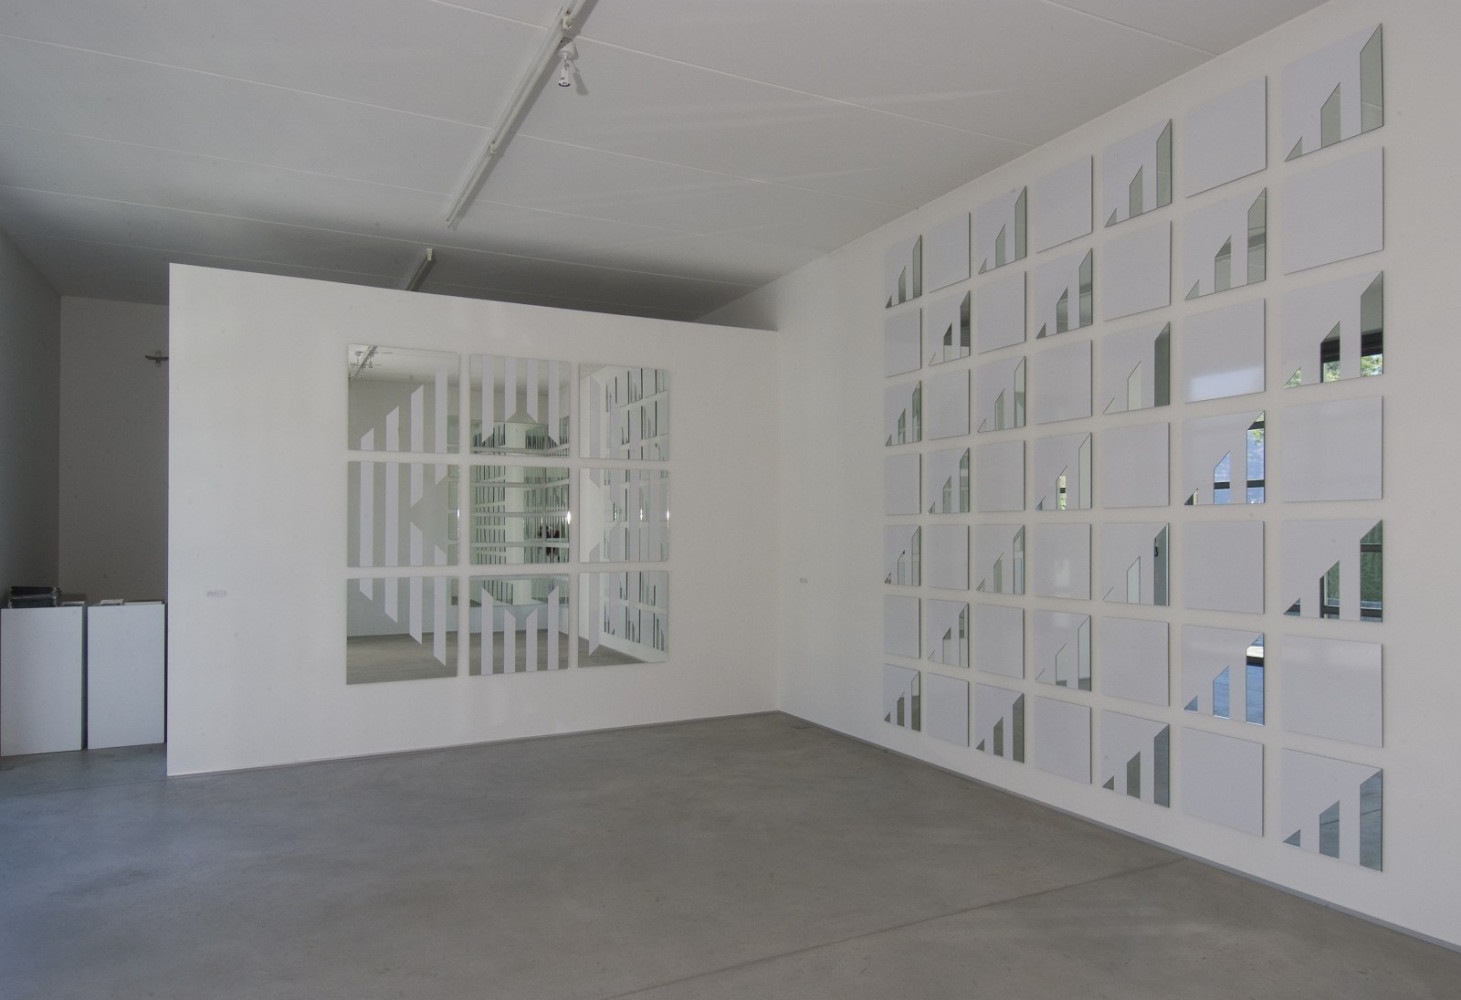 Daniel Buren, ‘Voir   Se voir   Savoir’, Installation view, Buchmann Agra